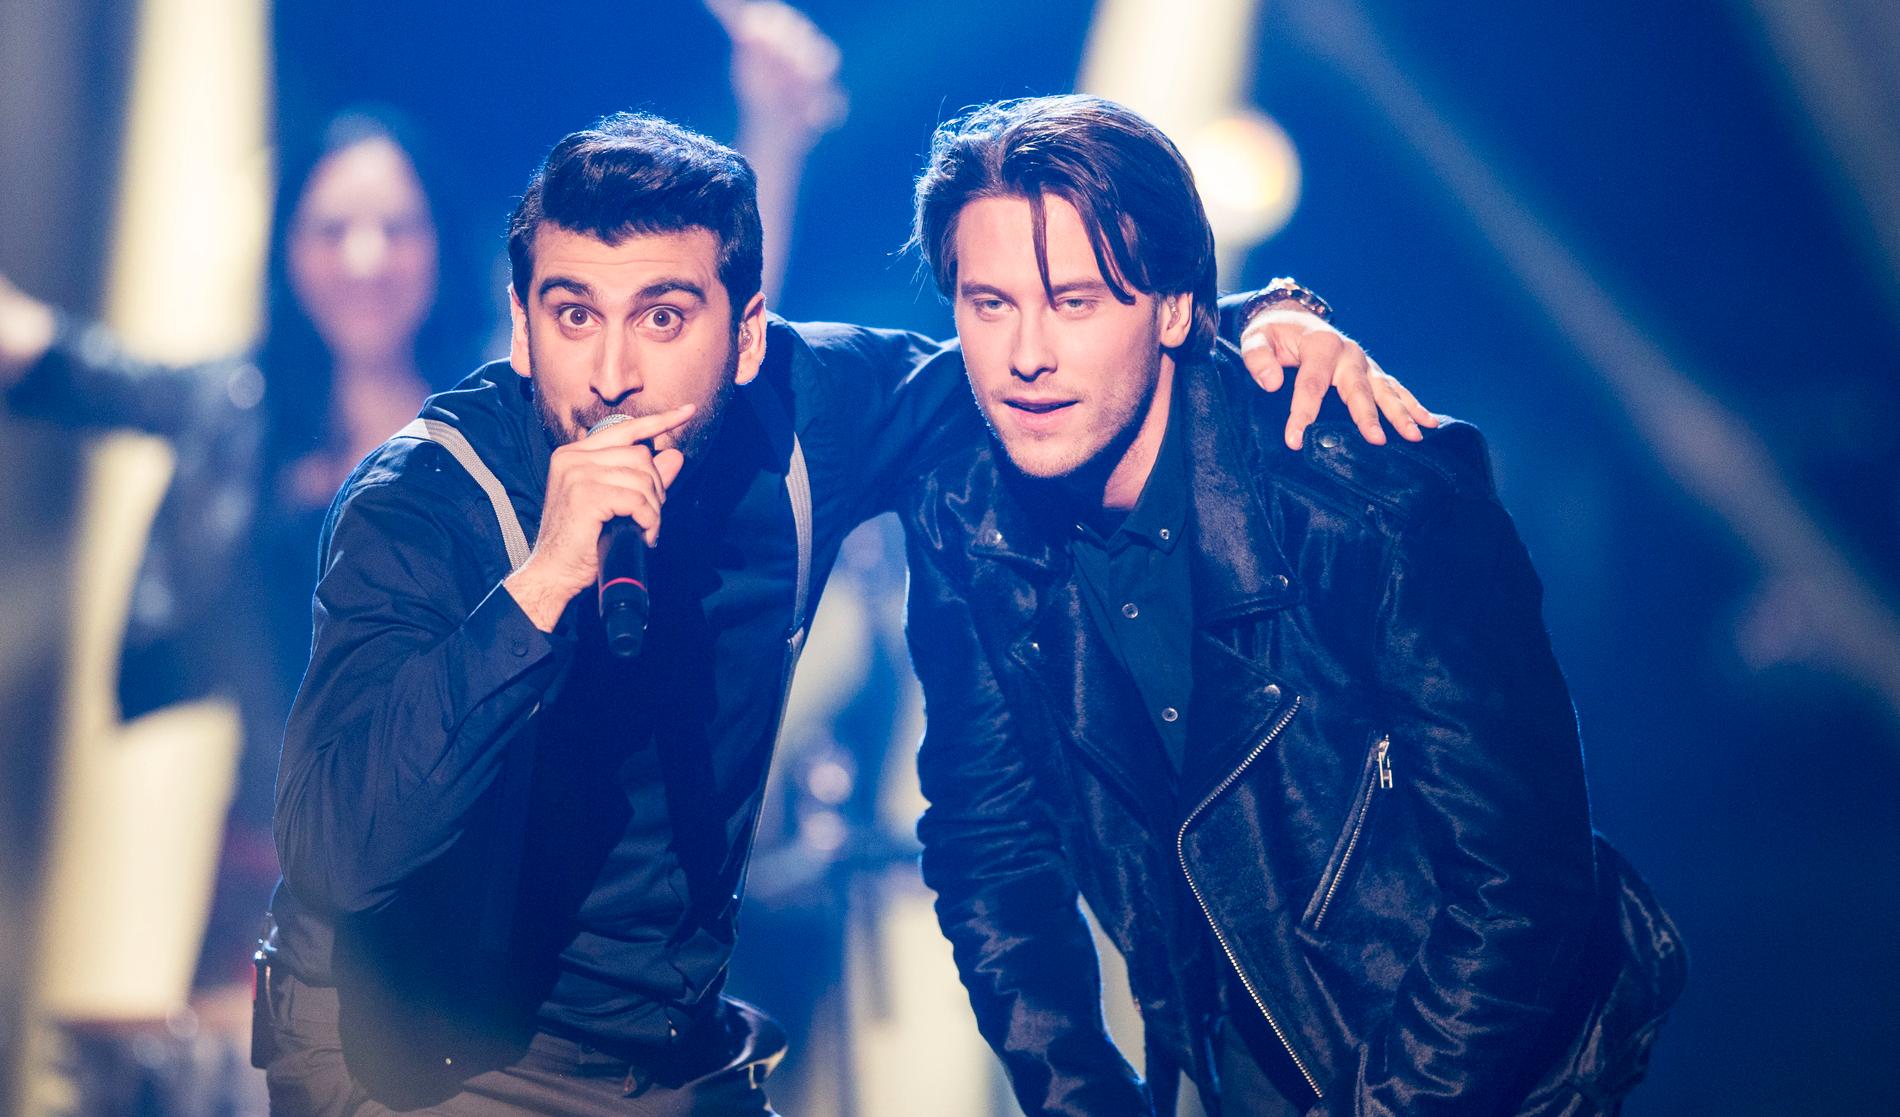 Victor Crone på Melodifestivalens scen 2015 tillsammans med duettpartnern Behrang Miri